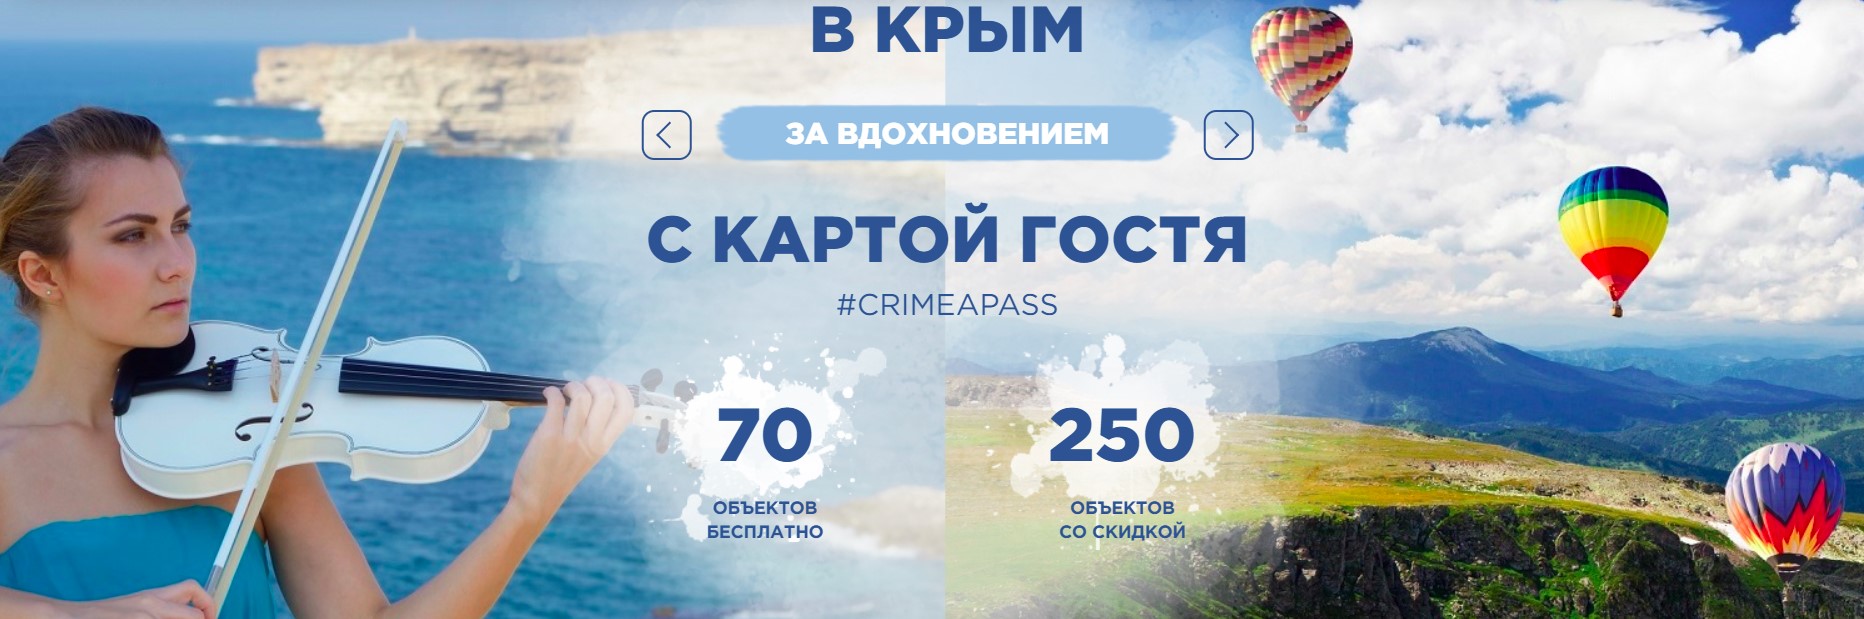 карта гостя Крыма и Севастополя